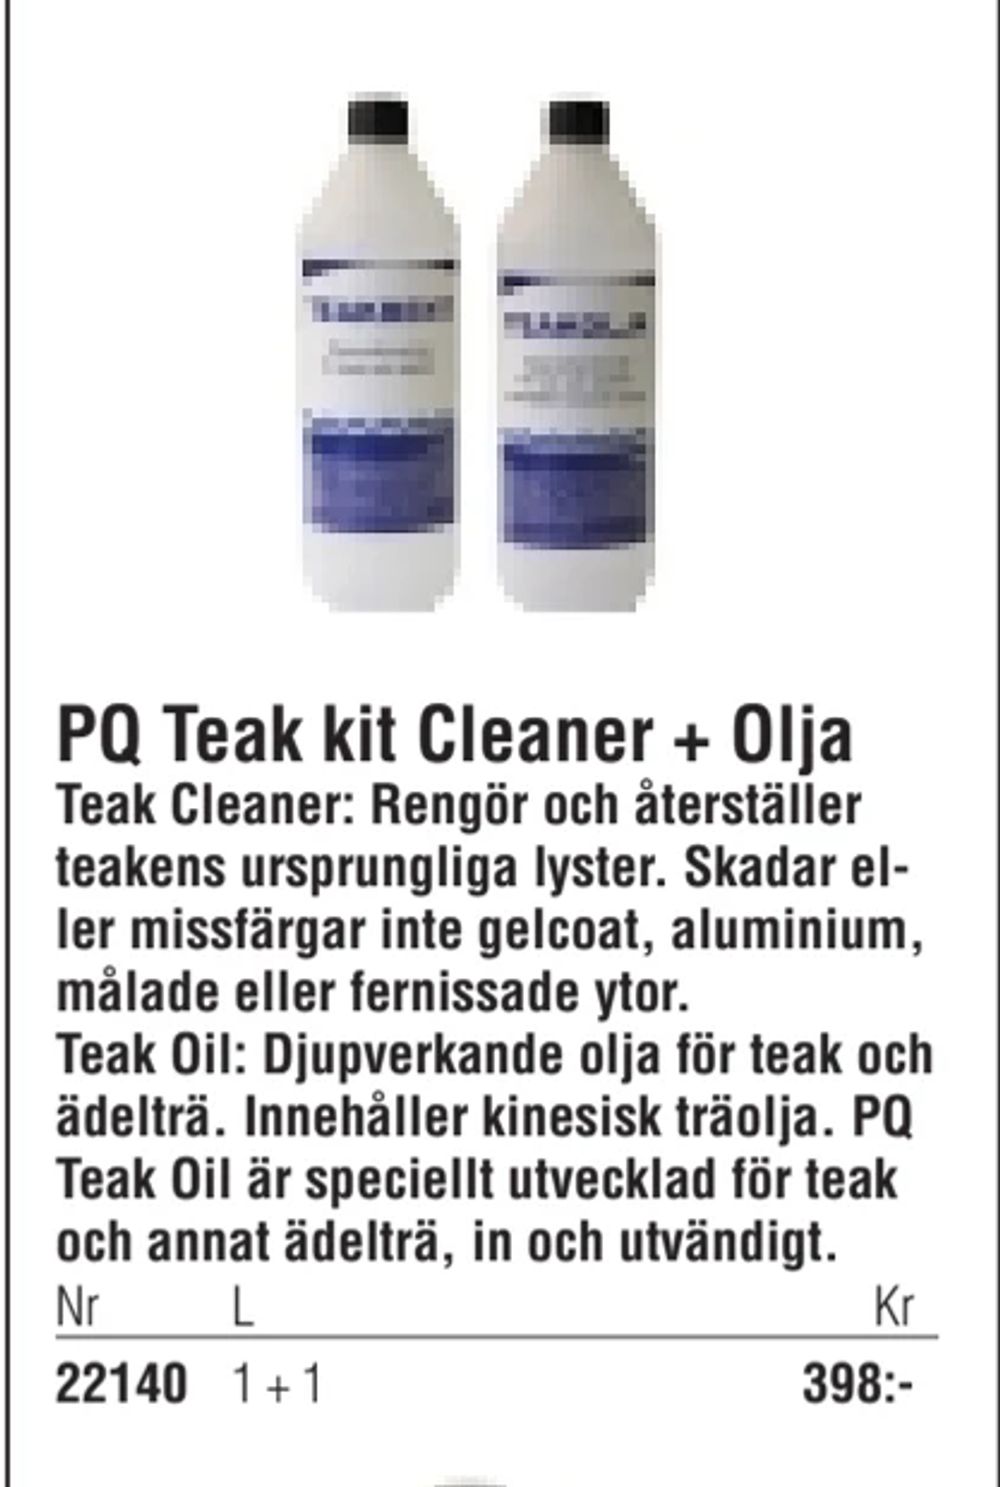 Erbjudanden på PQ Teak kit Cleaner + Olja från Erlandsons Brygga för 398 kr